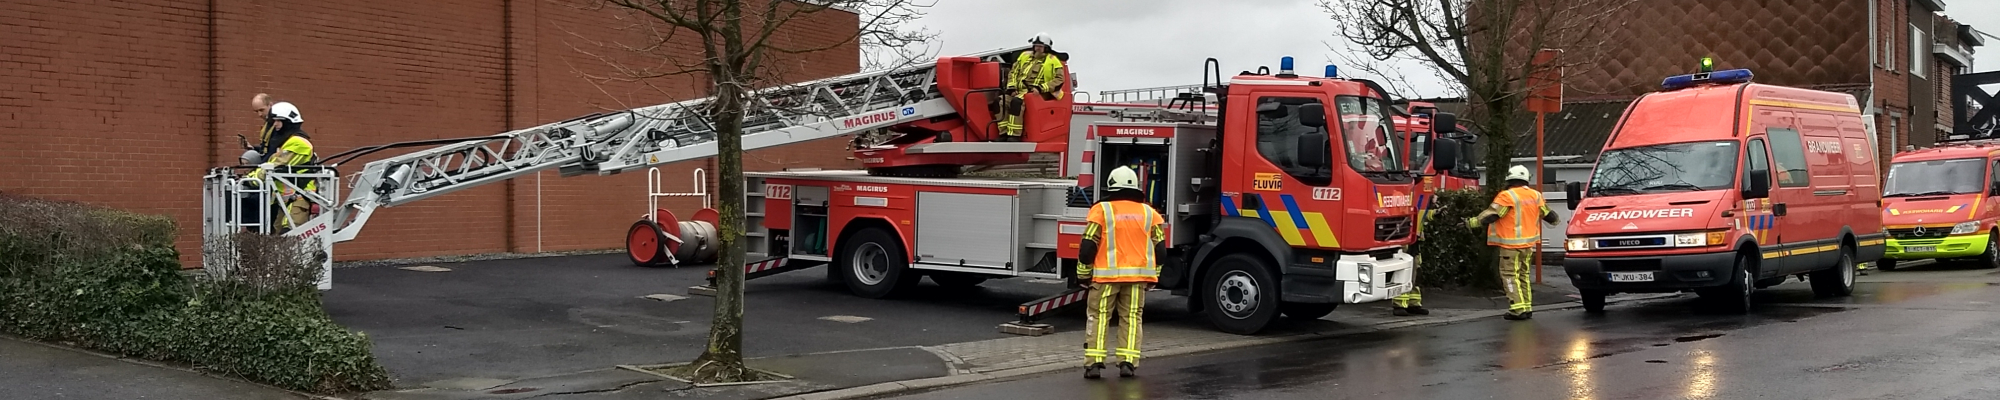 Ladderwagen en signalisatiewagen brandweer